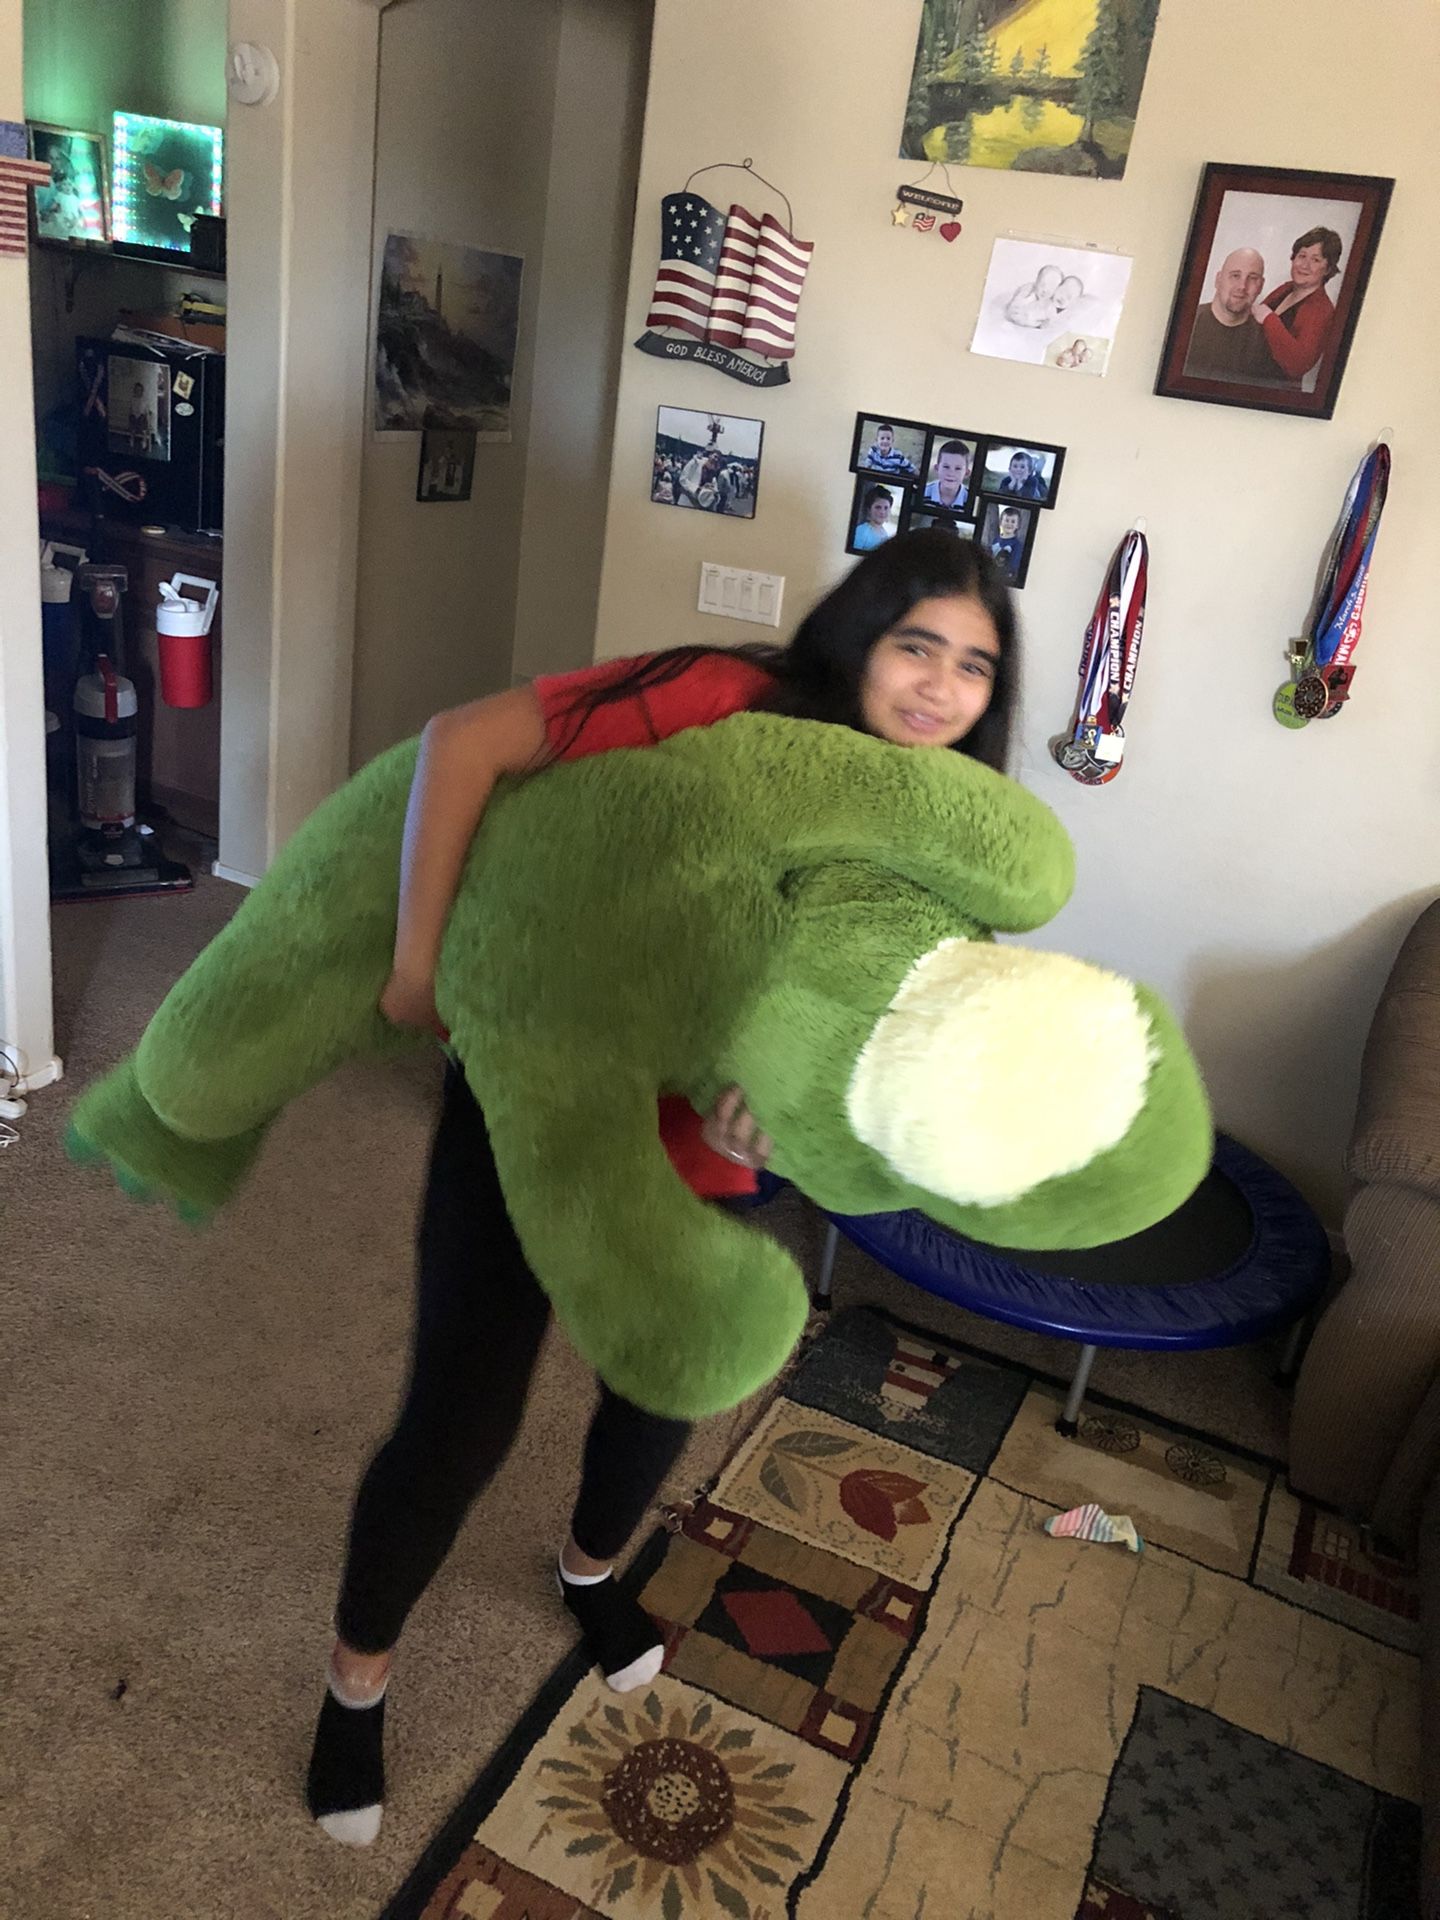 Giant stuffed animal